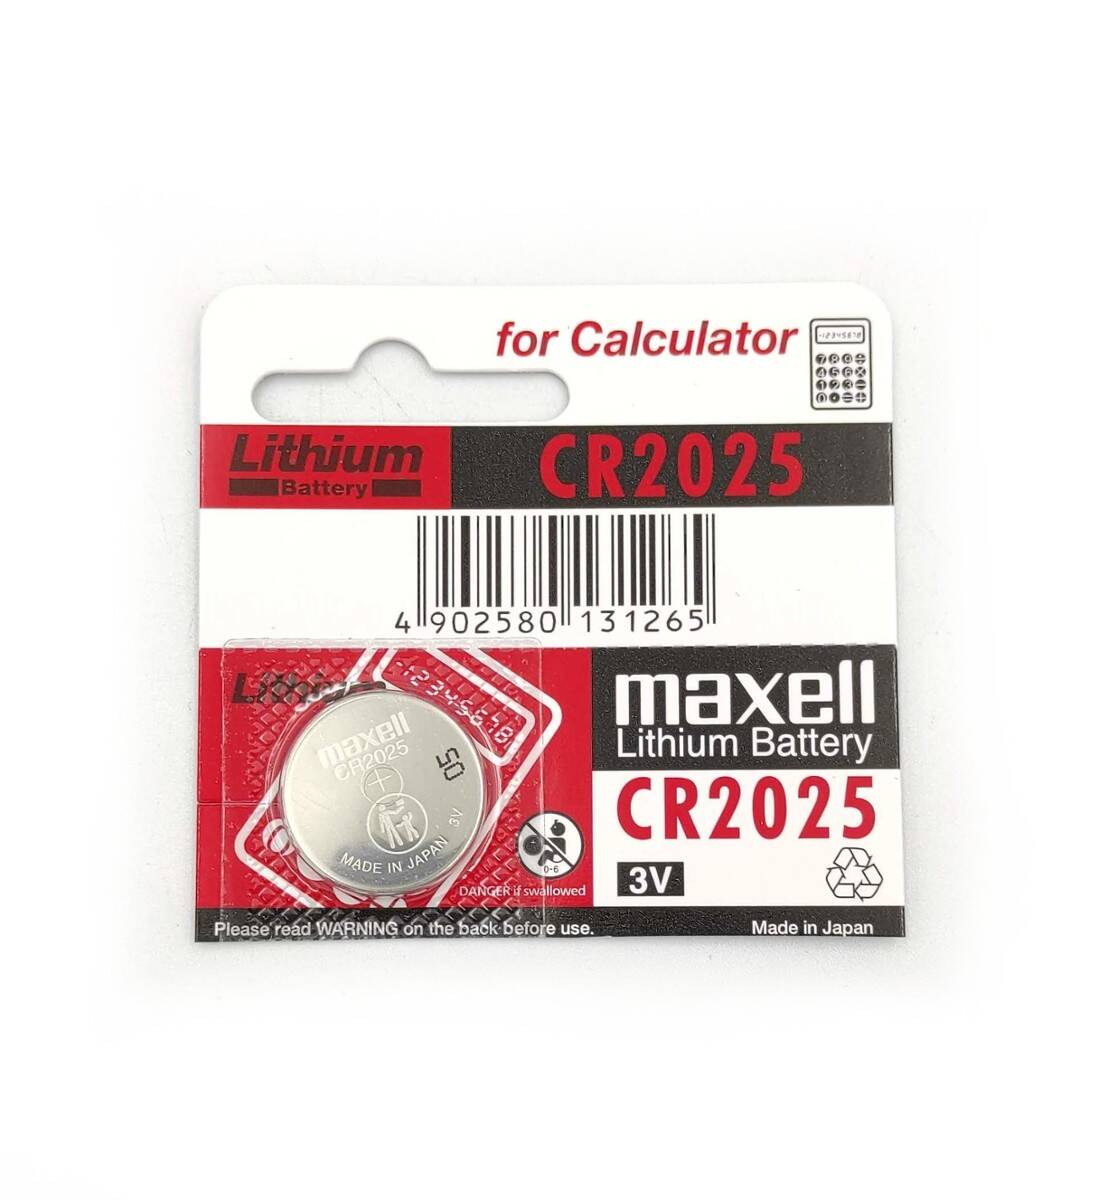 MAXELL bateria litowa płaska CR2025 3V do przyrządów pomiarowych (Zdjęcie 1)